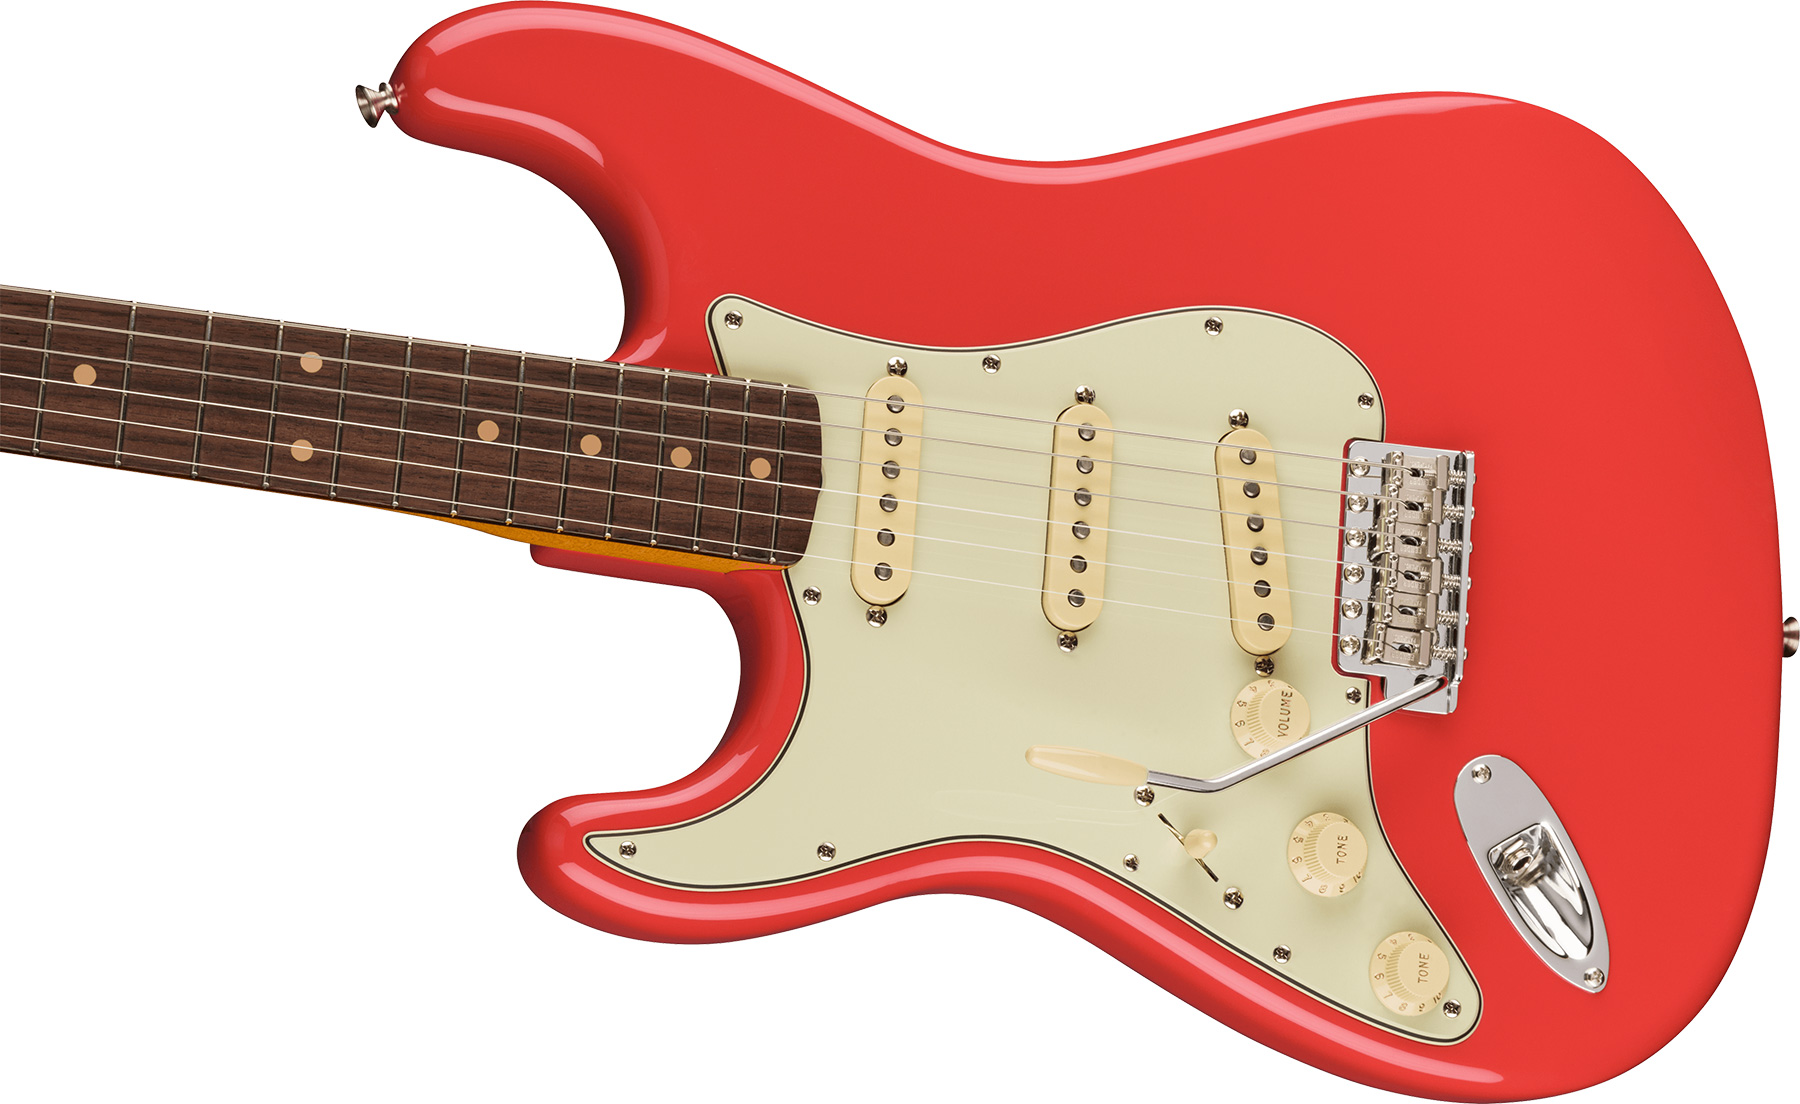 Fender Strat 1961 American Vintage Ii Lh Gaucher Usa 3s Trem Rw - Fiesta Red - E-Gitarre für Linkshänder - Variation 2